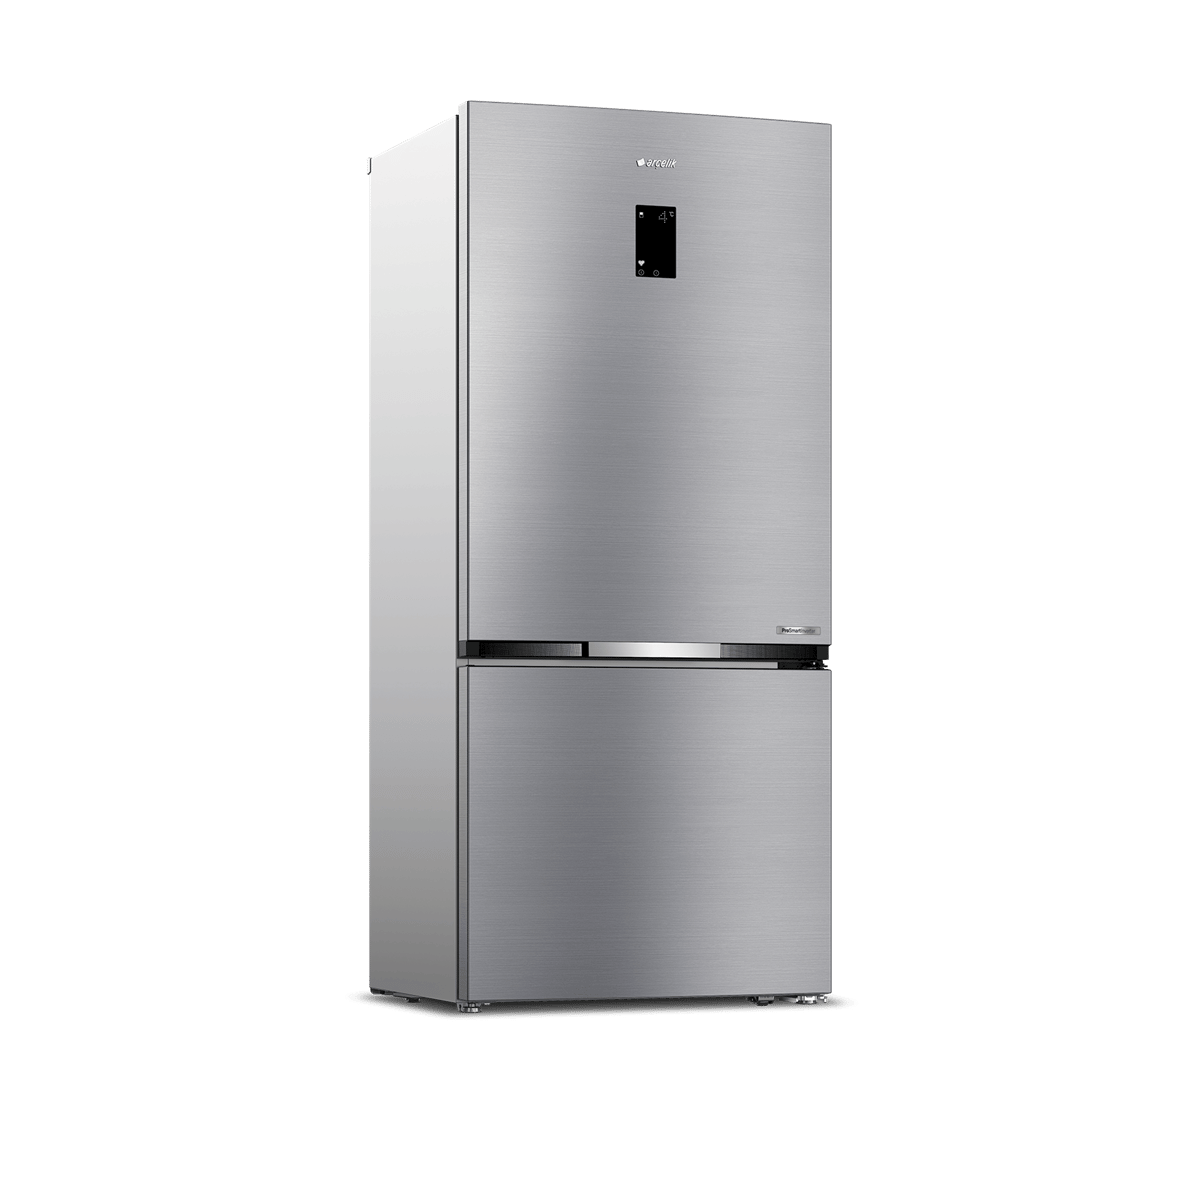 Arçelik 283721 EI No Frost Buzdolabı - Arçelik Nofrost Buzdolabı Fiyatları